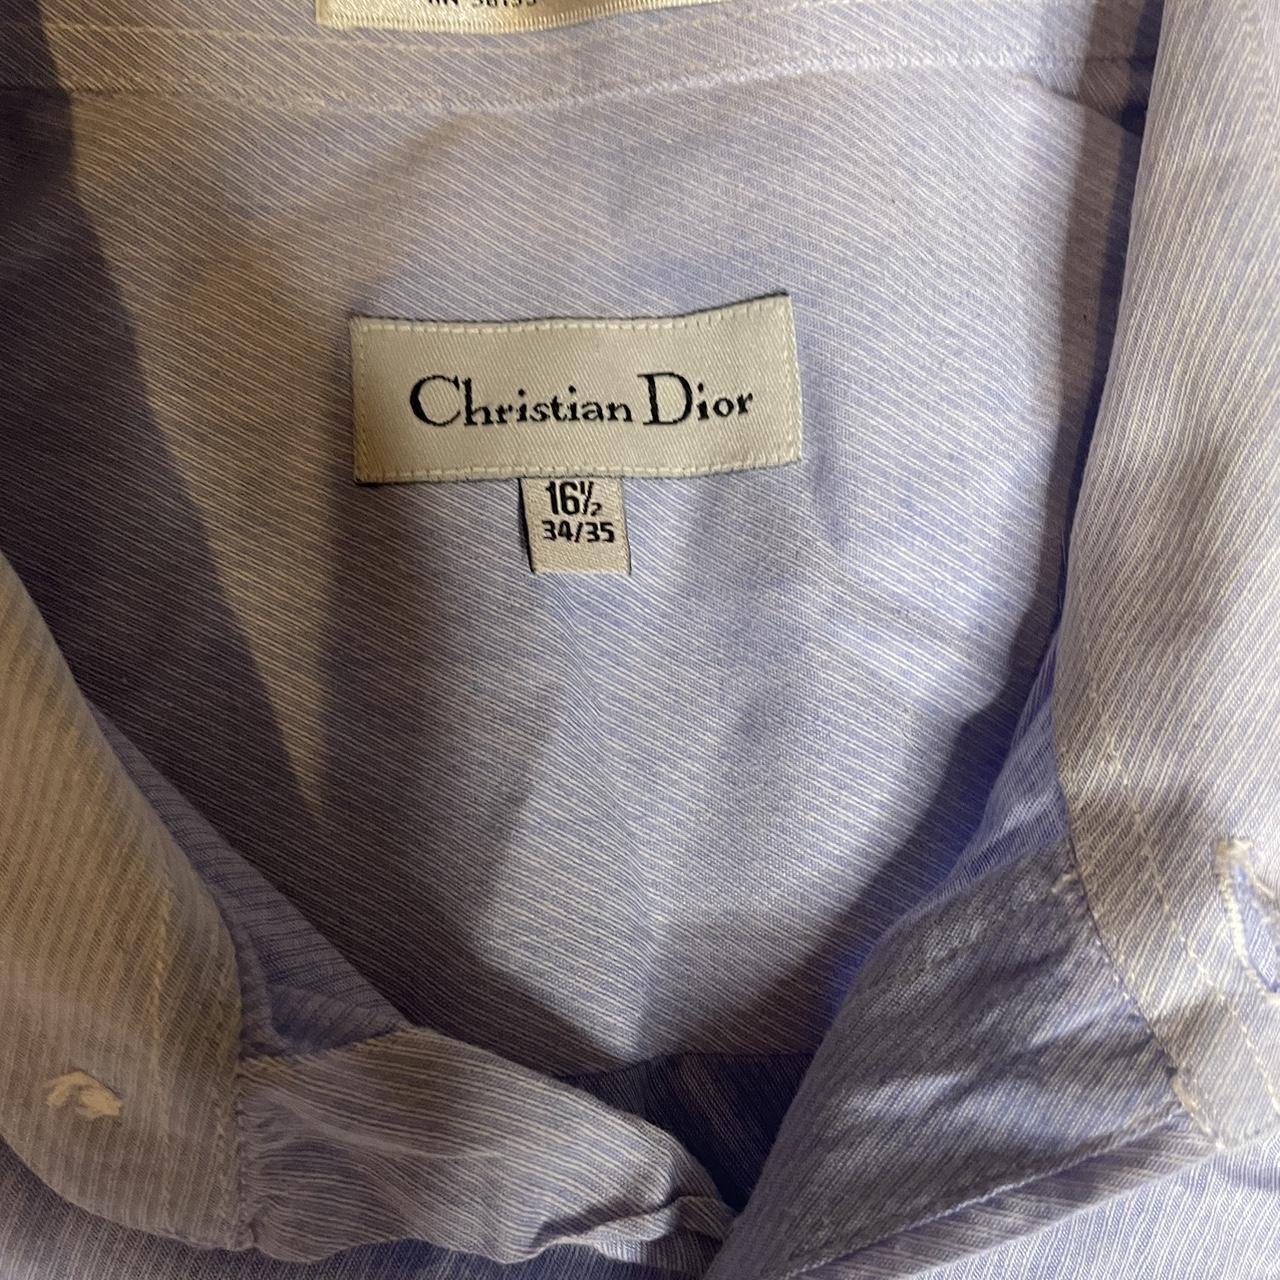 Christian Dior button up shirt Dress shirt 16 1/2... - Depop